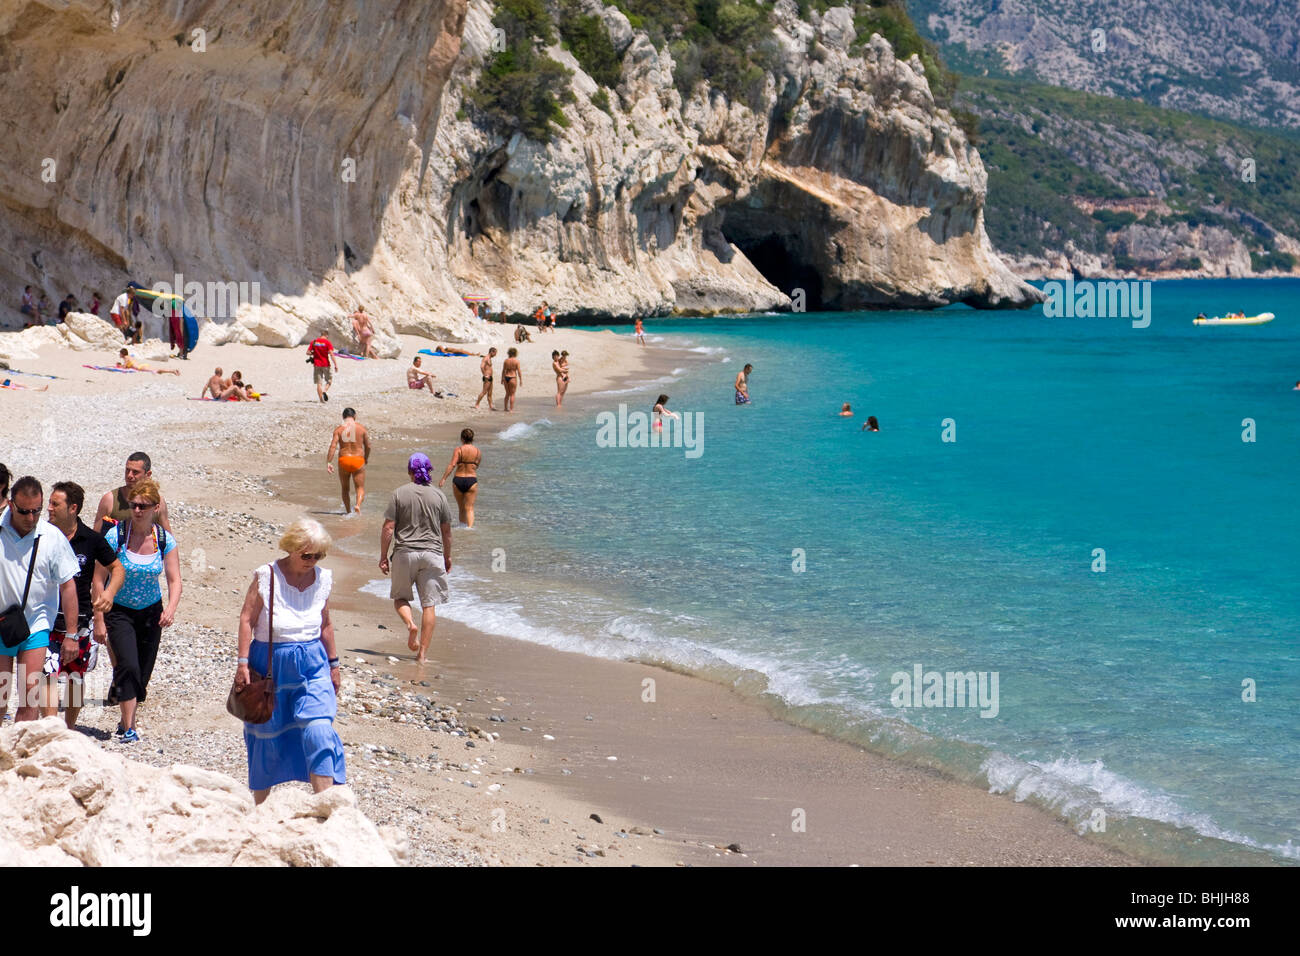 Plage de Cala Luna, Sardaigne, île de l'Italie. Les gens sur la plage. Eau bleu clair dans la baie de Cala Luna, Mer Méditerranée. Banque D'Images